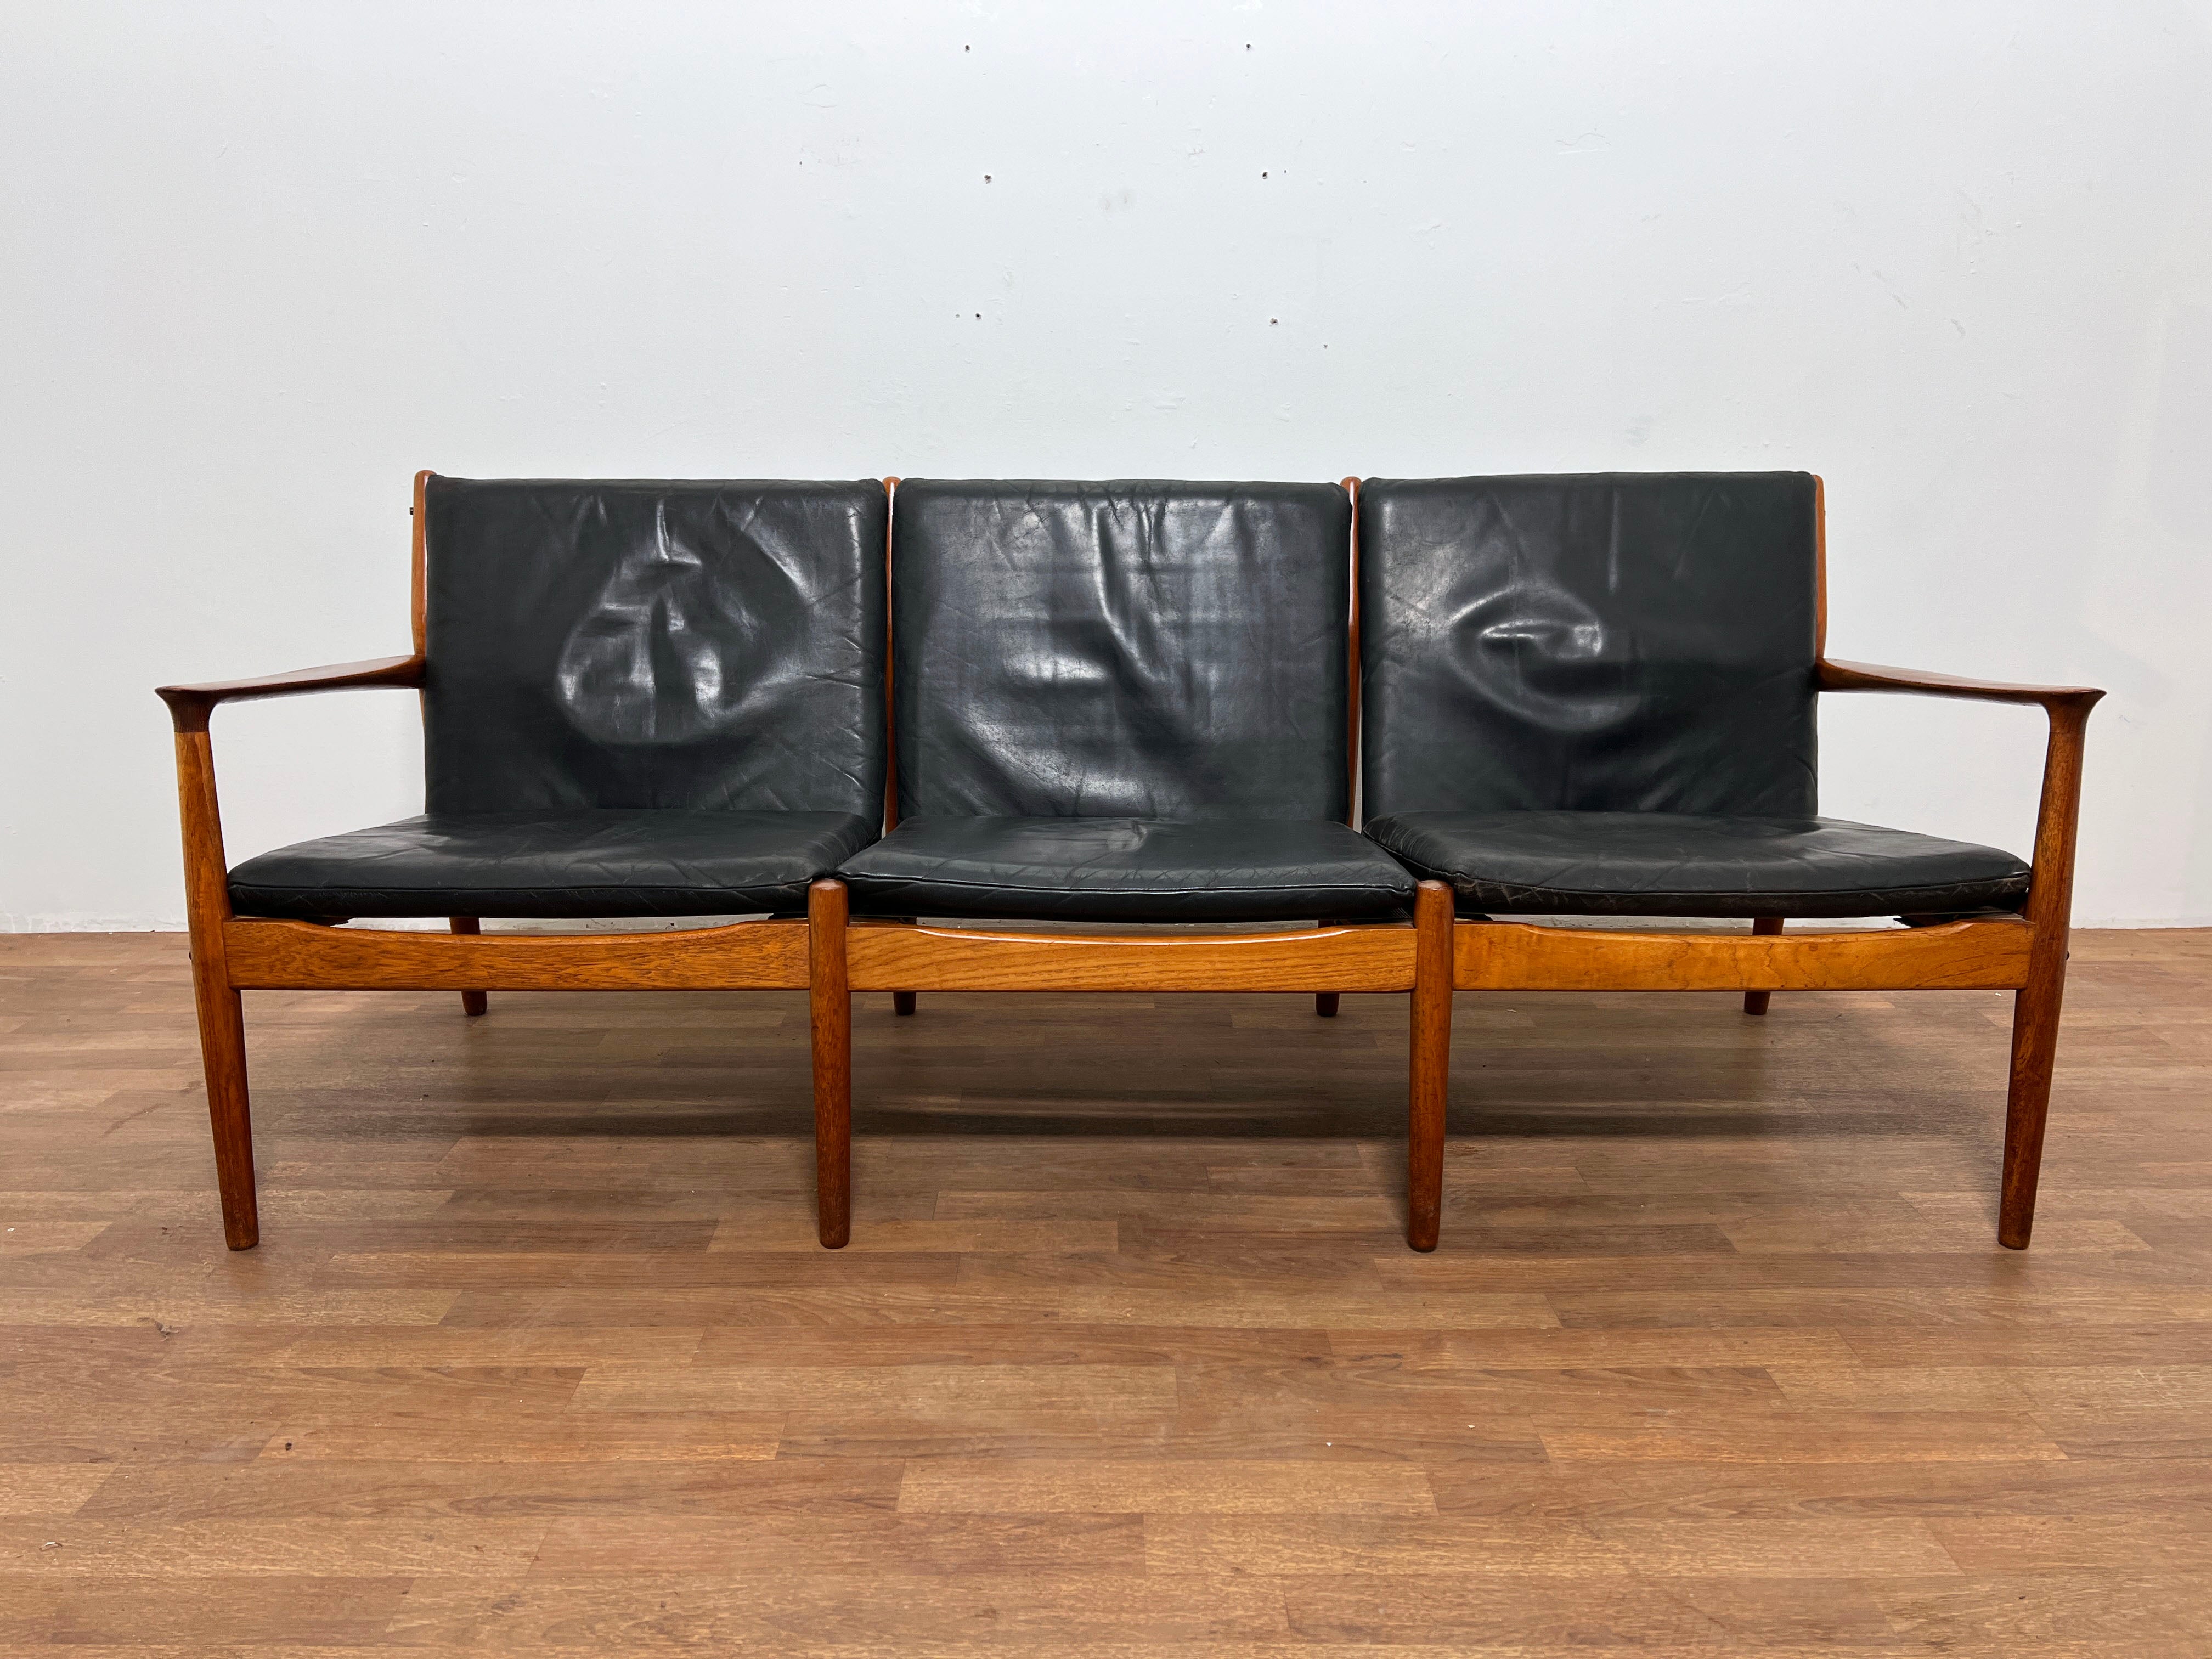 Ein dänisches Dreisitzer-Sofa aus Teakholz mit originaler weicher Lederpolsterung, entworfen von Svend Aage Eriksen für die Glostrup Mobelfabrik, in der Art von Grete Jalk, die ebenfalls für Glostrup entwarf.

Ein passender Loungesessel ist in einem